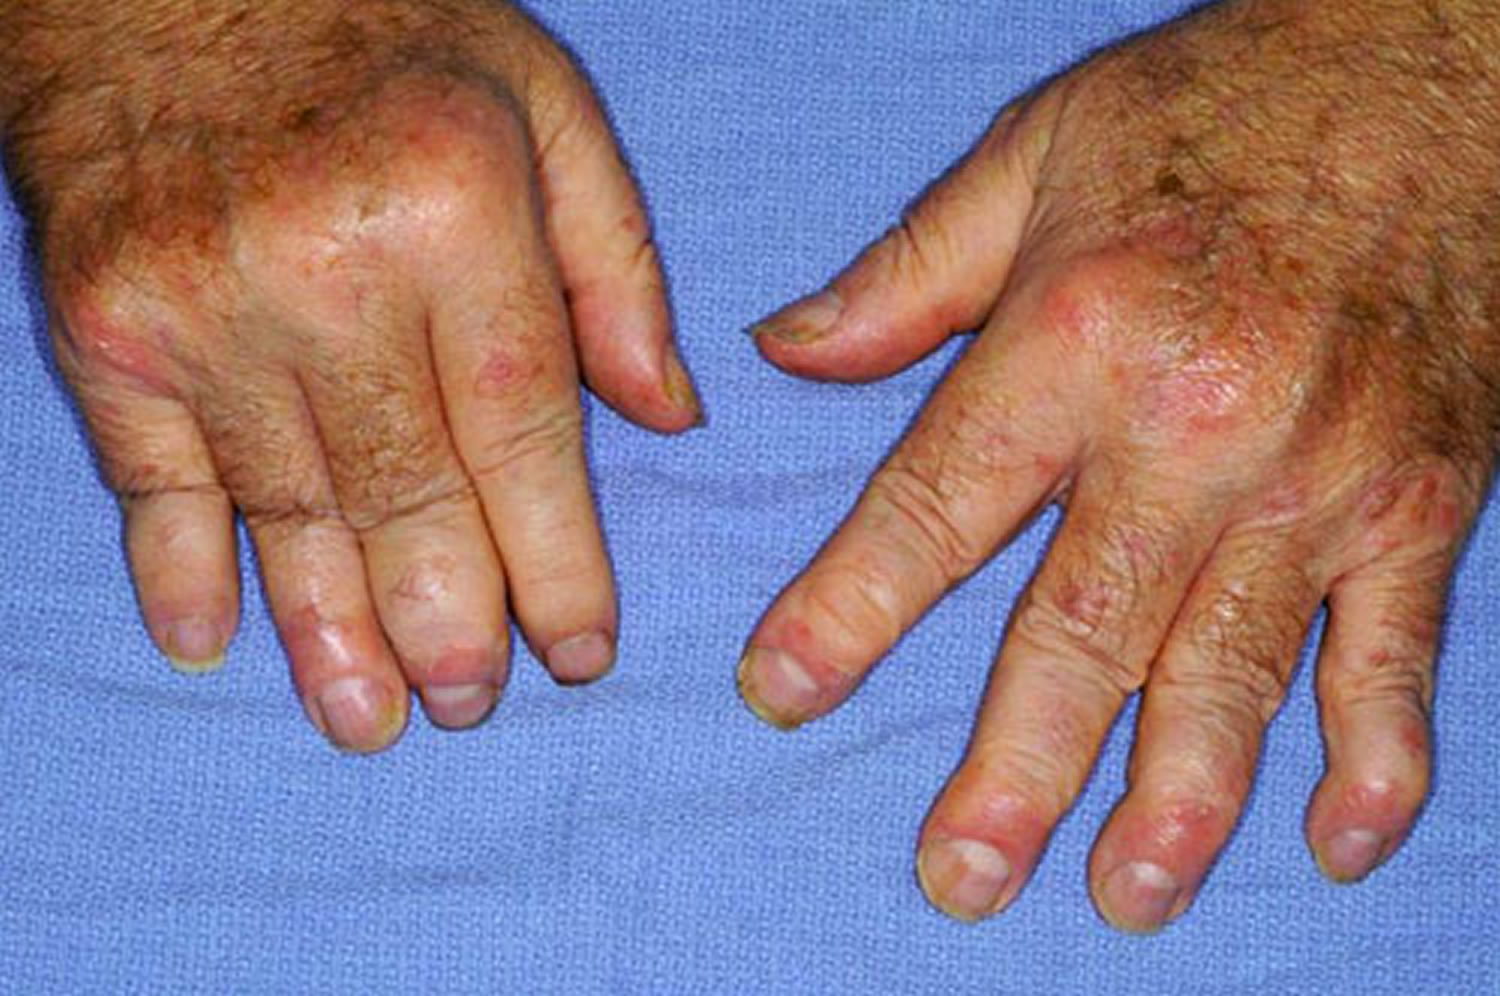 psoriatic-arthritis